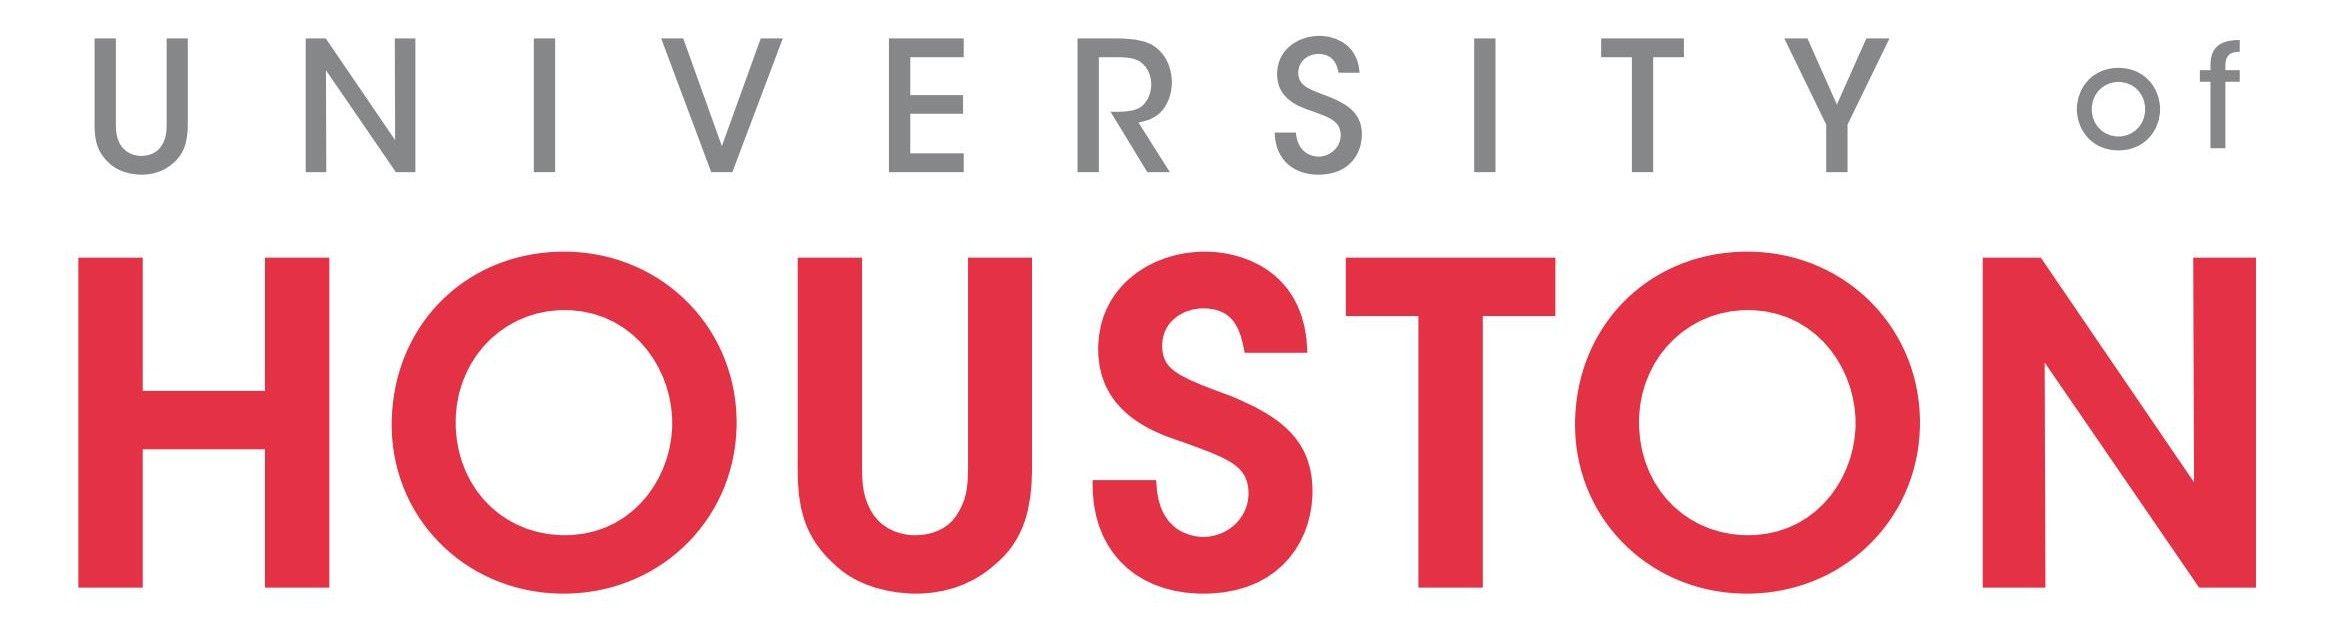 Houston Logo - University Of Houston Logo Schweitzer Fellowship